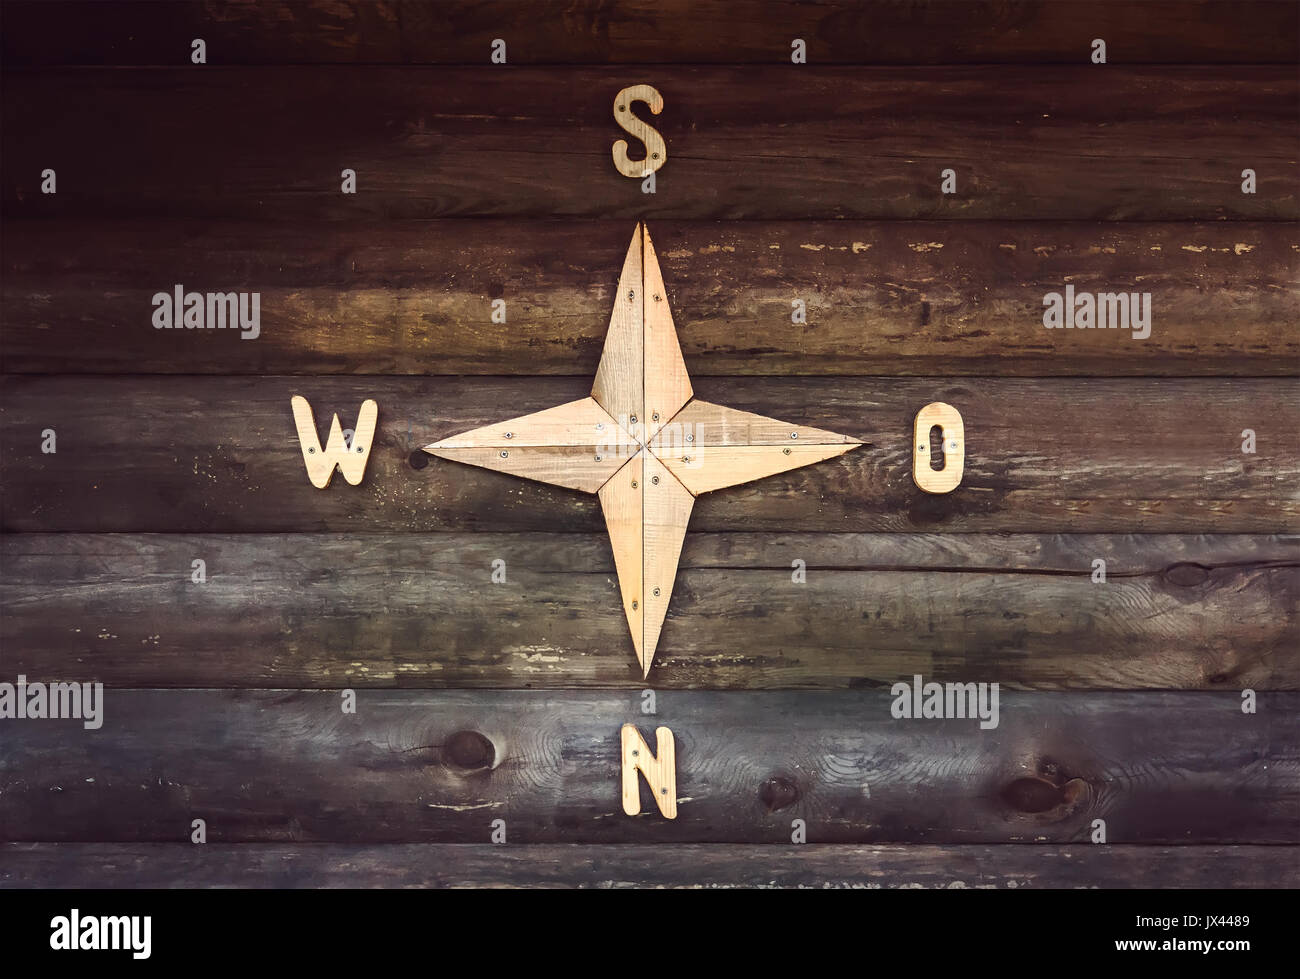 Holz- Kompass auf eine Holzwand in einem Landhaus. Dekorierte Wand in Form einer Kompass, mit den Teilen der Welt, Nord, Süd, West, Eas Stockfoto